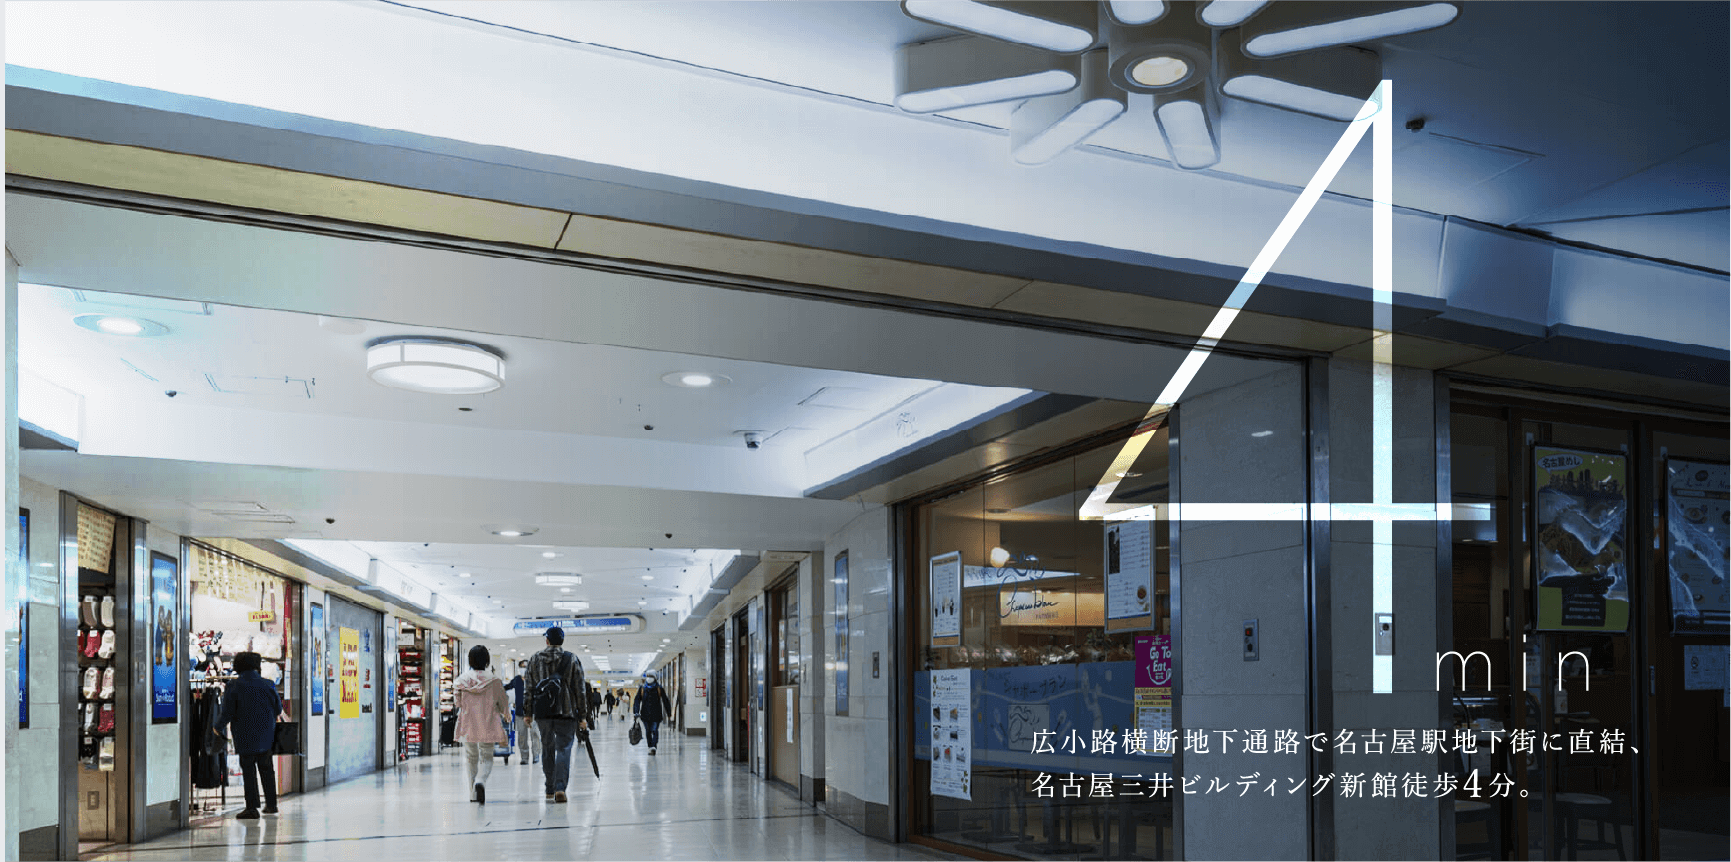 広小路横断地下通路で名古屋駅地下街に直結、名古屋三井ビルディング新館徒歩4分。